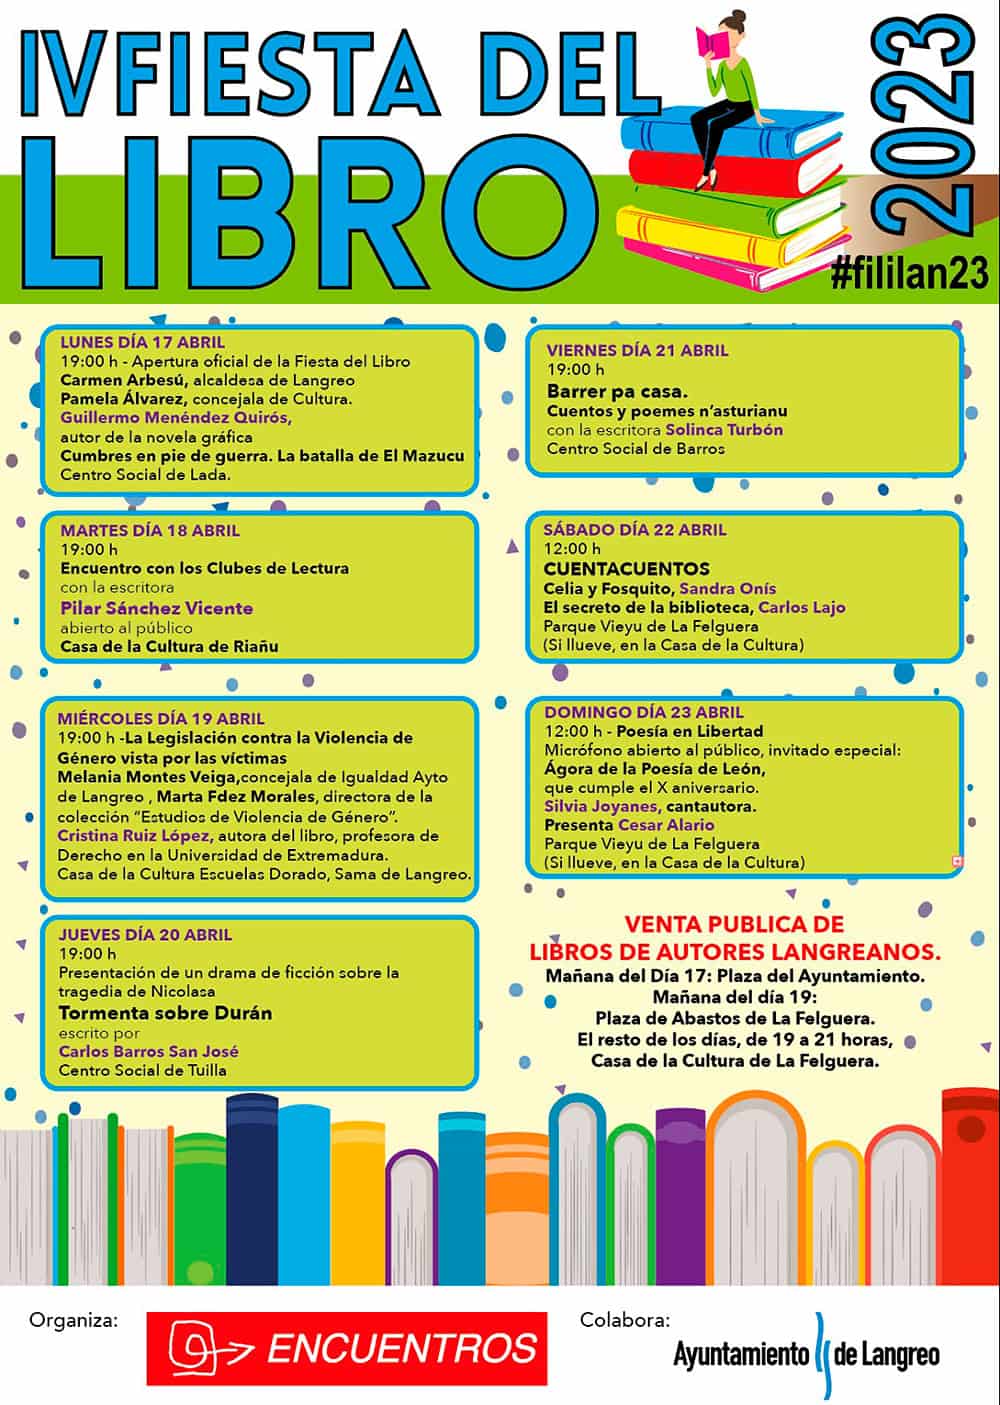 https://fusionasturias.com/otras-secciones/libros/iv-fiesta-del-libro-en-langreo.htm IV Fiesta del Libro en Langreo